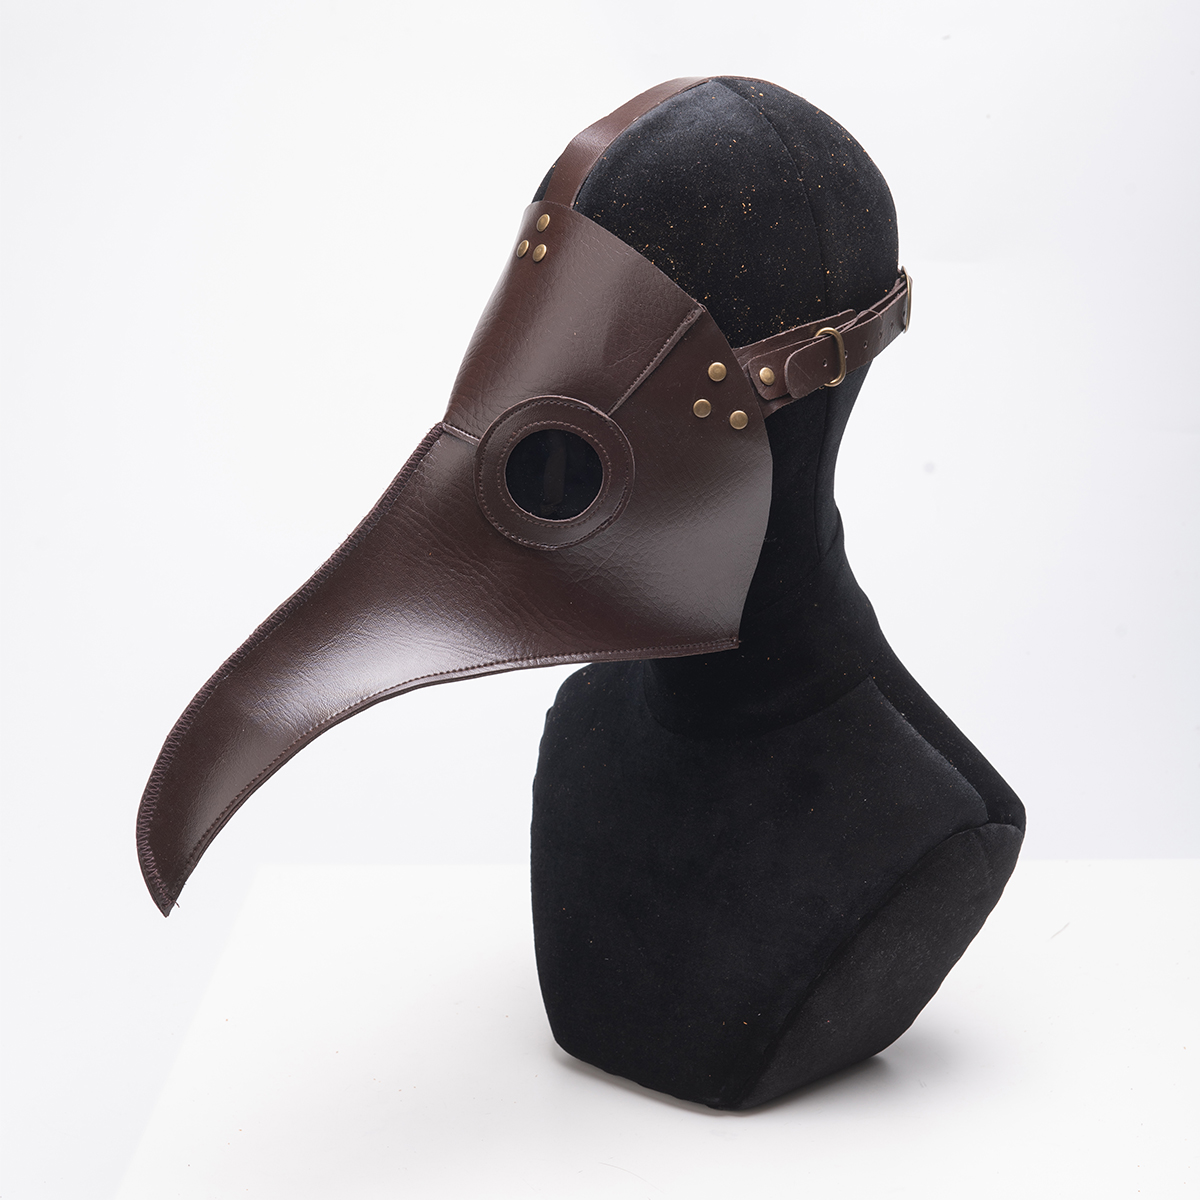 

Halloween Plague Doctor Bird Steampunk Mask Long Nose Beak Cosplay Costume Props